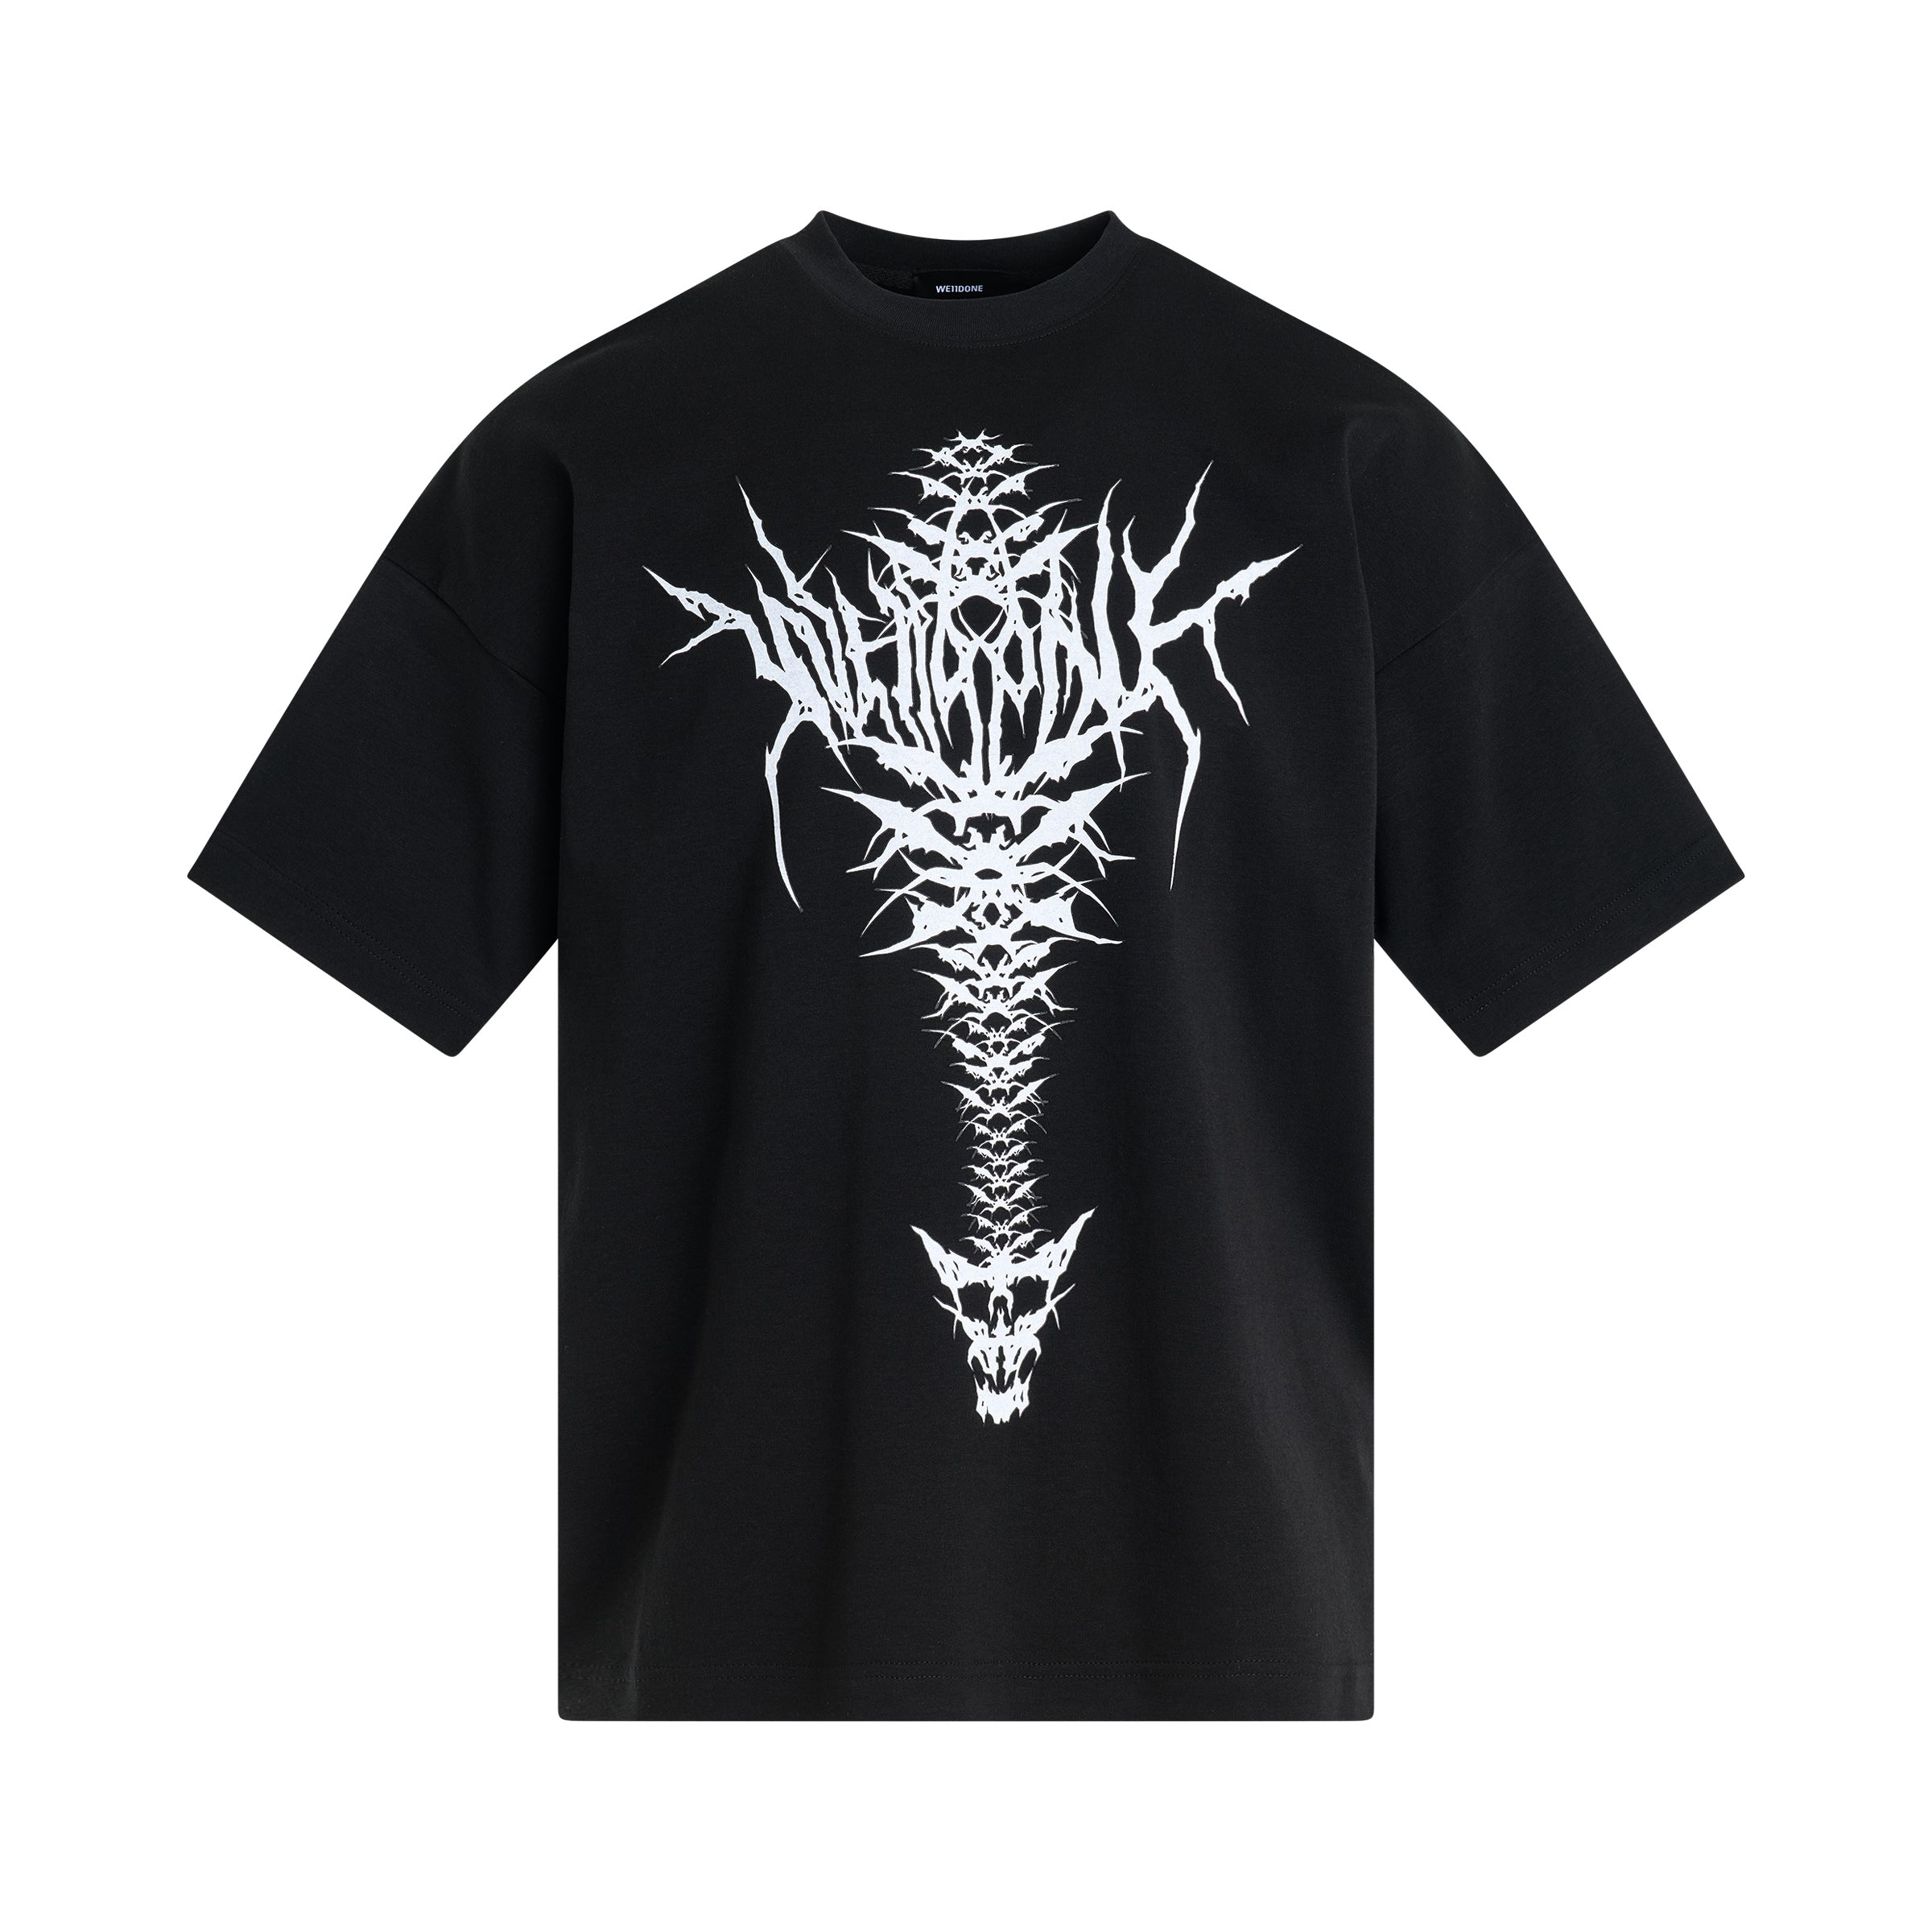 Spine Skull Print T-Shirt in Black - 1